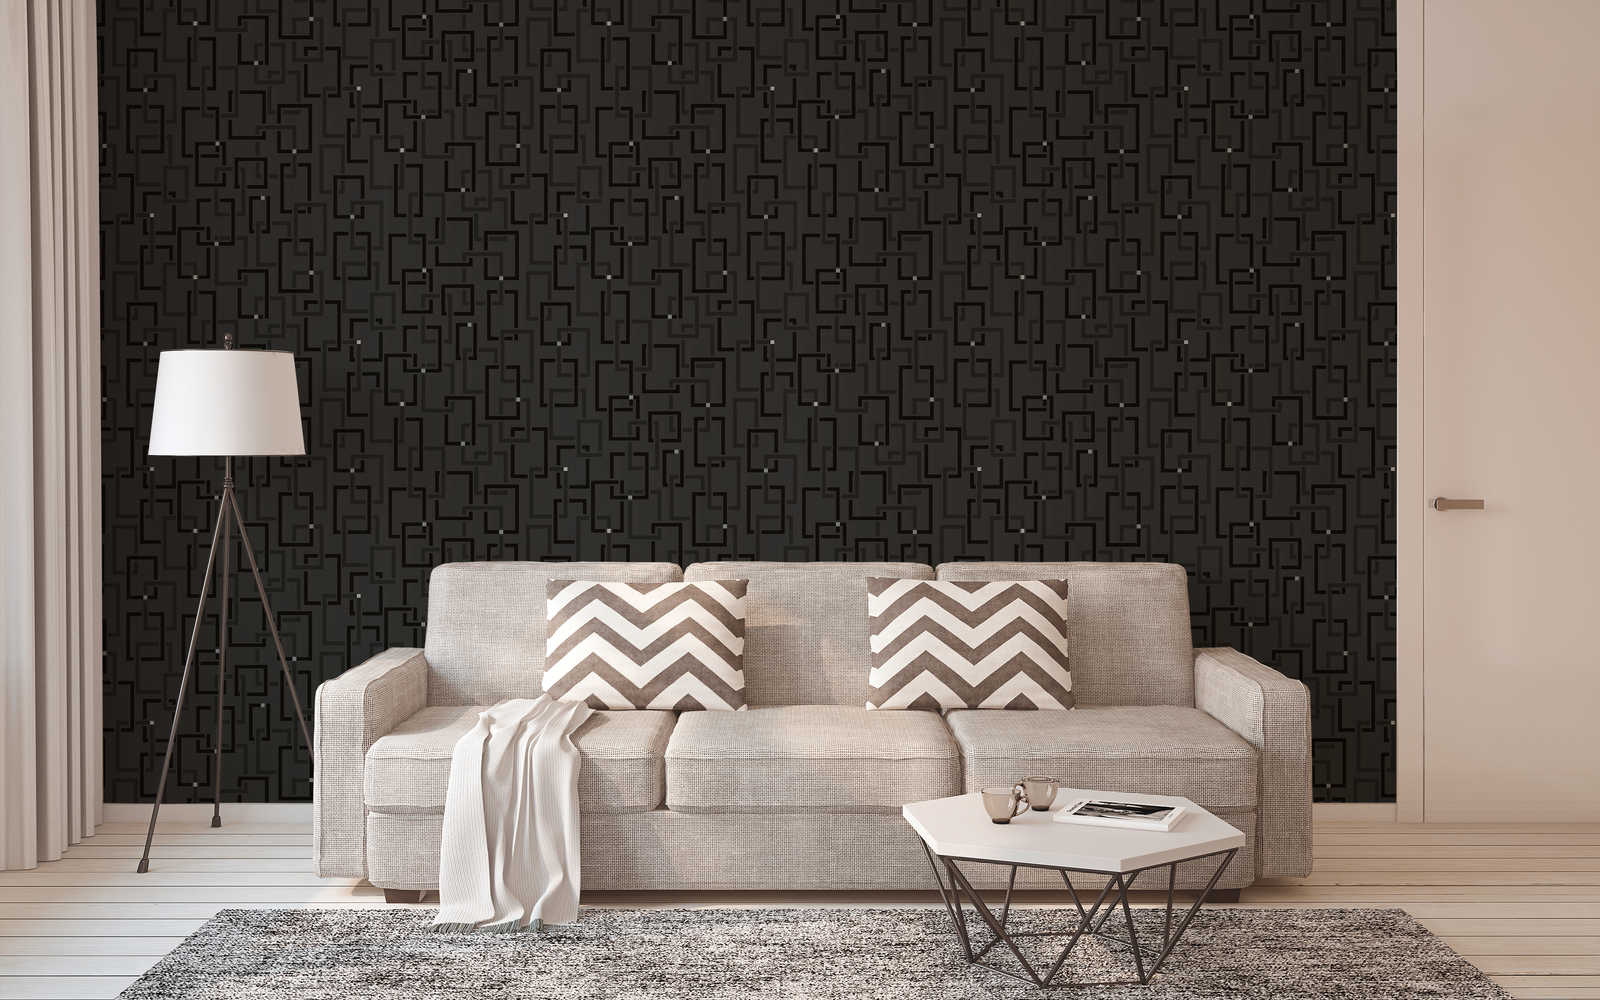             Designbehang retrostijl, patroon & 3D-effect - zwart, zilver
        